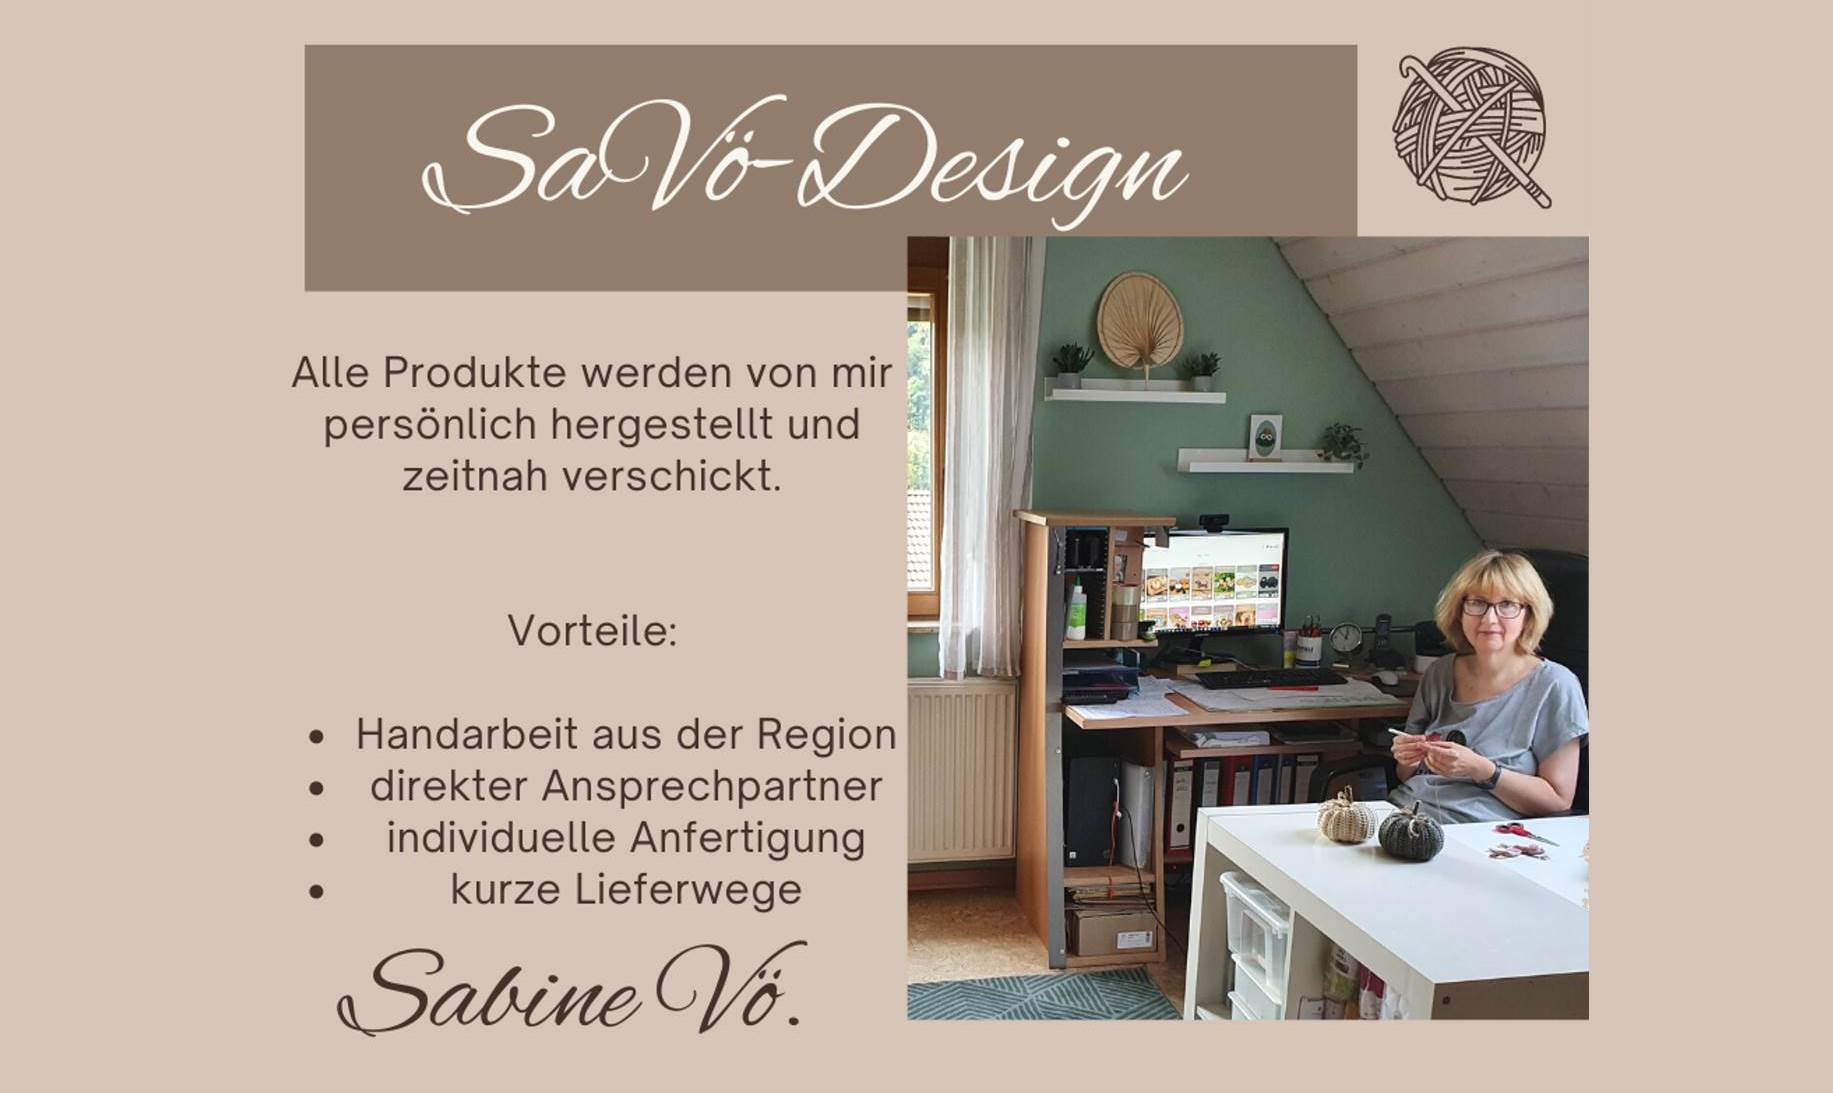 SaVö-Design 